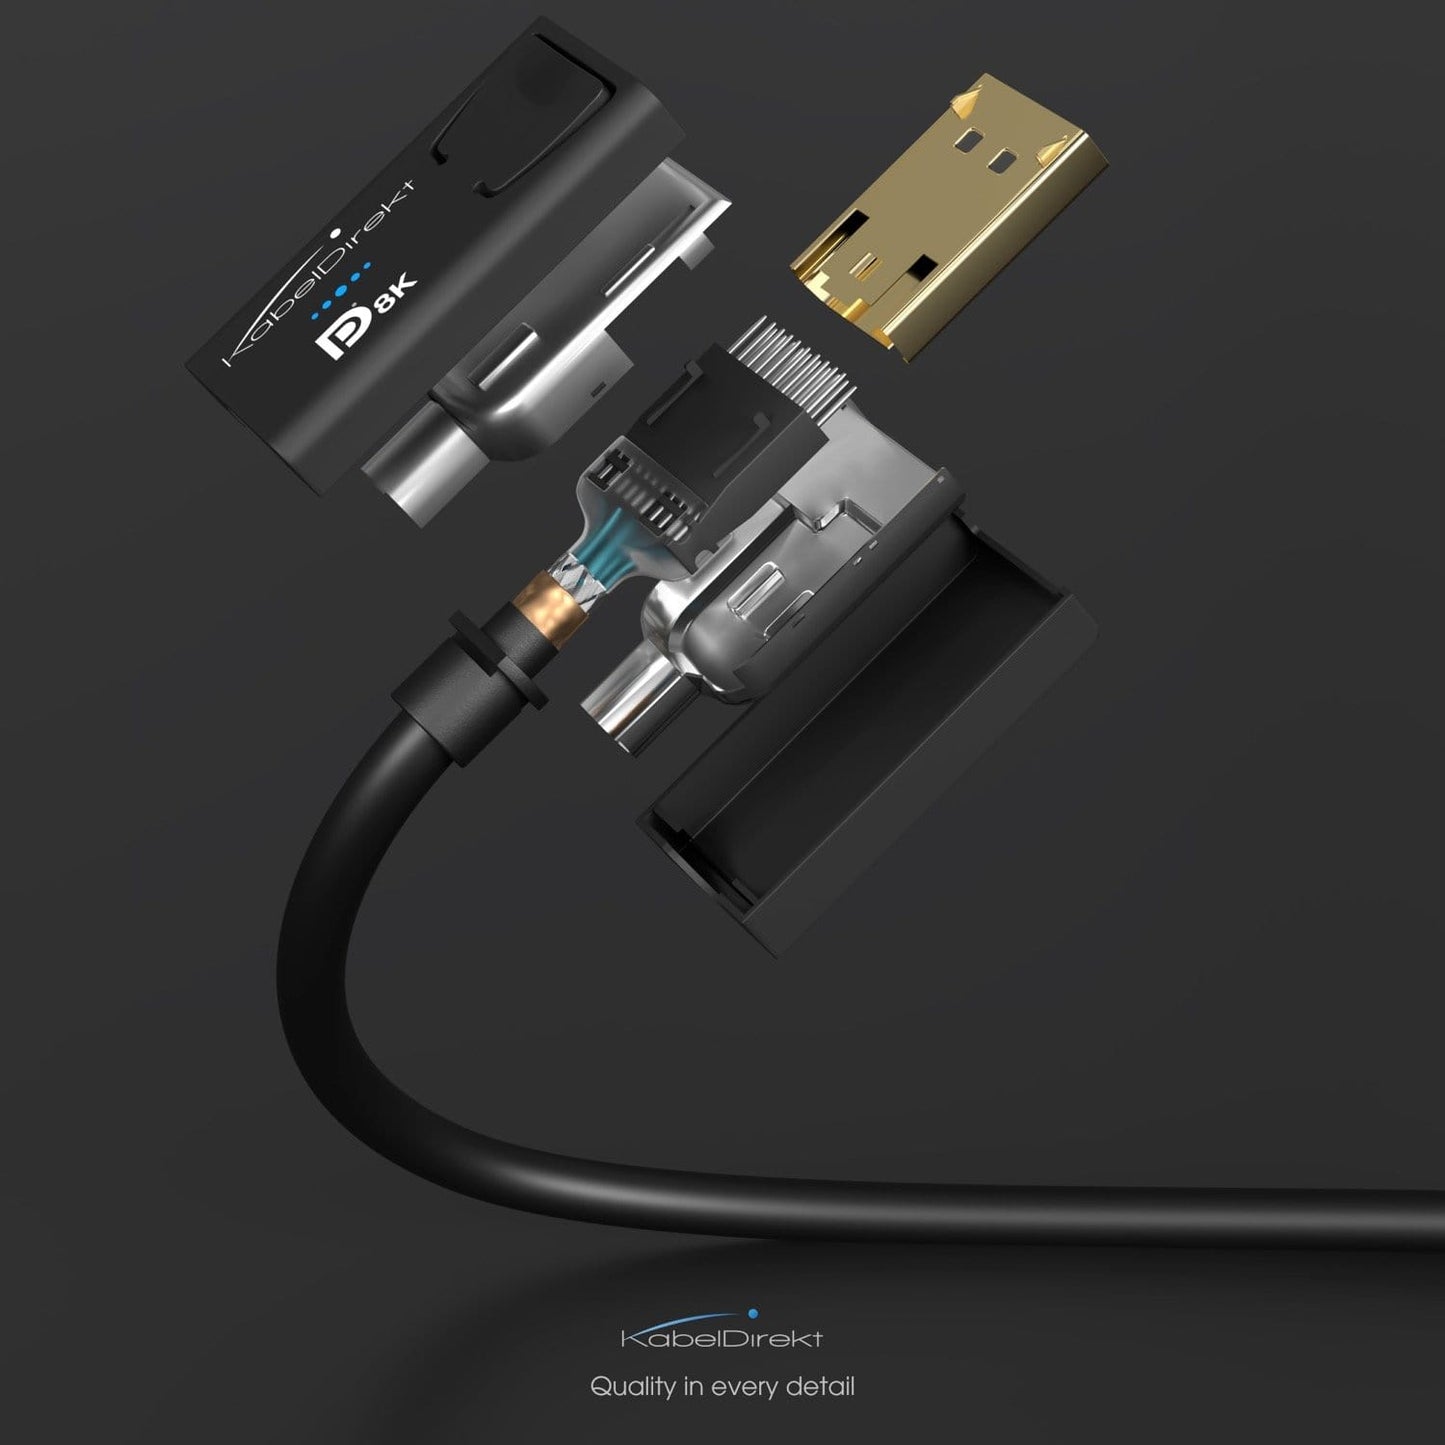 8K DisplayPort cable - VESA certified, DP 1.4